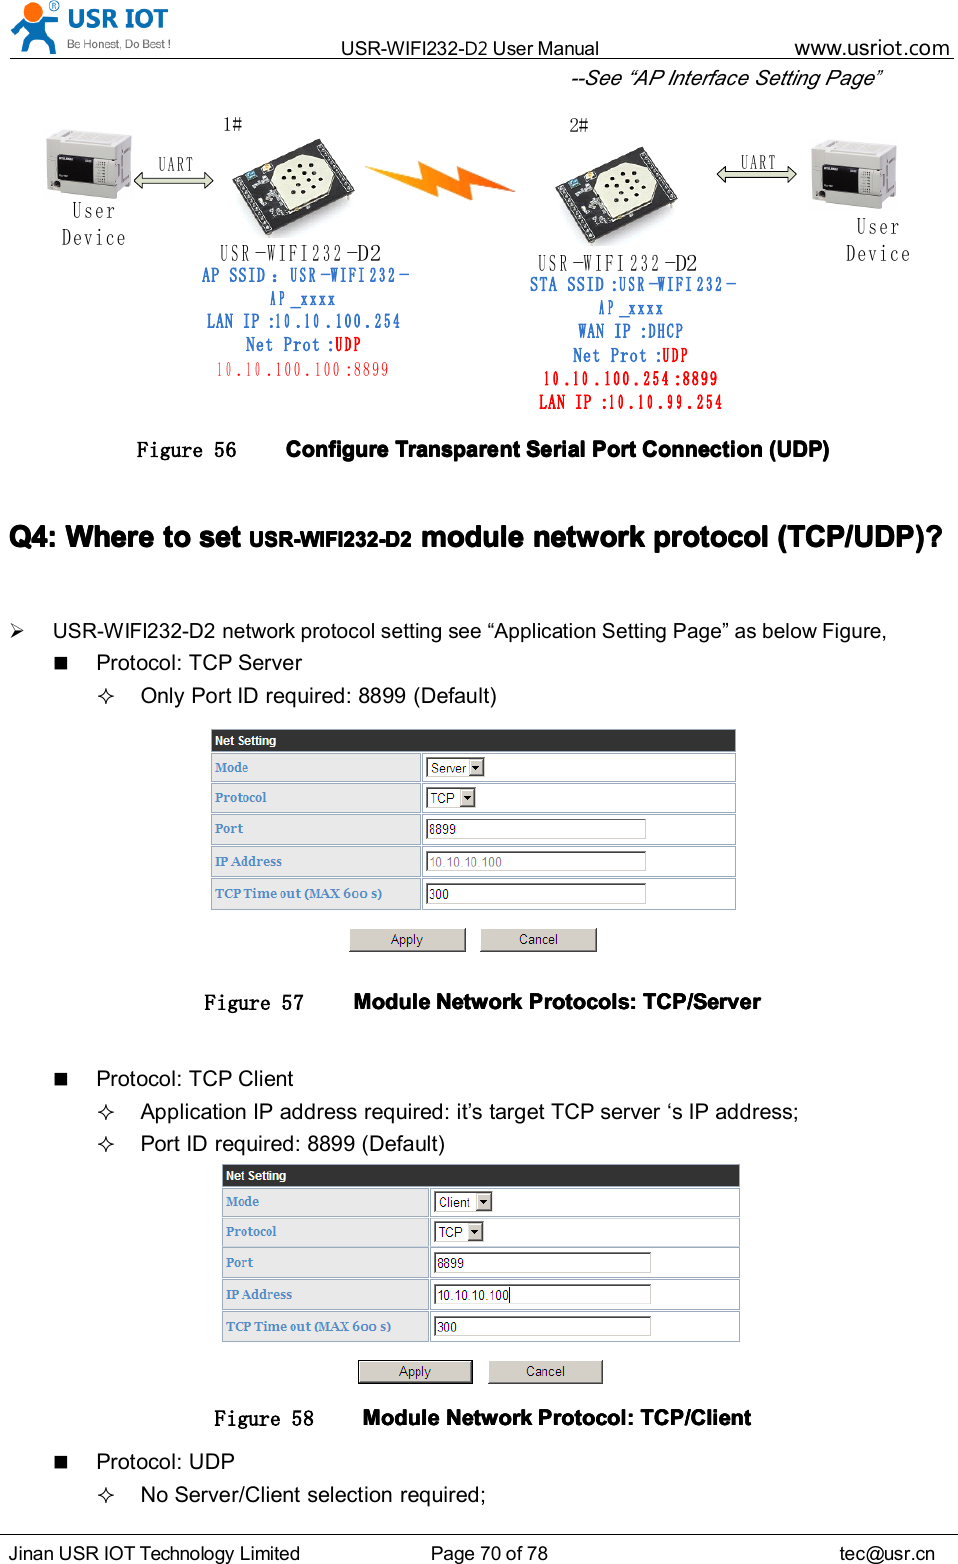 USR-WIFI232- D2 User Manual www.usr iot .comJinan USR IOT Technology Limited Page 70 of 78 tec@usr.cn--See “ AP Interface Setting Page”USR-WIFI232- D 2User DeviceUARTUSR-WIFI232-D2UARTAP SSID：USR-WIFI232-AP_xxxxLAN IP:10.10.100.254Net Prot:UDP10.10.100.100:8899STA SSID:USR-WIFI232-AP_xxxxWAN IP:DHCPNet Prot:UDP10.10.100.254:8899LAN IP:10.10.99.2541 #2 #User DeviceFigure 56 ConfigureConfigureConfigureConfigure TransparentTransparentTransparentTransparent SerialSerialSerialSerial PortPortPortPort ConnectionConnectionConnectionConnection (UDP)(UDP)(UDP)(UDP)Q4:Q4:Q4:Q4: WhereWhereWhereWhere totototo setsetsetset USR-WIFI232-D2USR-WIFI232-D2USR-WIFI232-D2USR-WIFI232-D2 modulemodulemodulemodule networknetworknetworknetwork protocolprotocolprotocolprotocol (TCP/UDP)?(TCP/UDP)?(TCP/UDP)?(TCP/UDP)?USR-WIFI232-D2 network protocol setting see “ Application Setting Page ” as below Figure,Protocol: TCP ServerOnly Port ID required: 8899 (Default)Figure 57 ModuleModuleModuleModule NetworkNetworkNetworkNetwork Protocols:Protocols:Protocols:Protocols: TCP/ServerTCP/ServerTCP/ServerTCP/ServerProtocol: TCP ClientApplication IP address required: it ’ s target TCP server ‘ s IP address;Port ID required: 8899 (Default)Figure 58 ModuleModuleModuleModule NetworkNetworkNetworkNetwork Protocol:Protocol:Protocol:Protocol: TCP/ClientTCP/ClientTCP/ClientTCP/ClientProtocol: UDPNo Server/Client selection required;